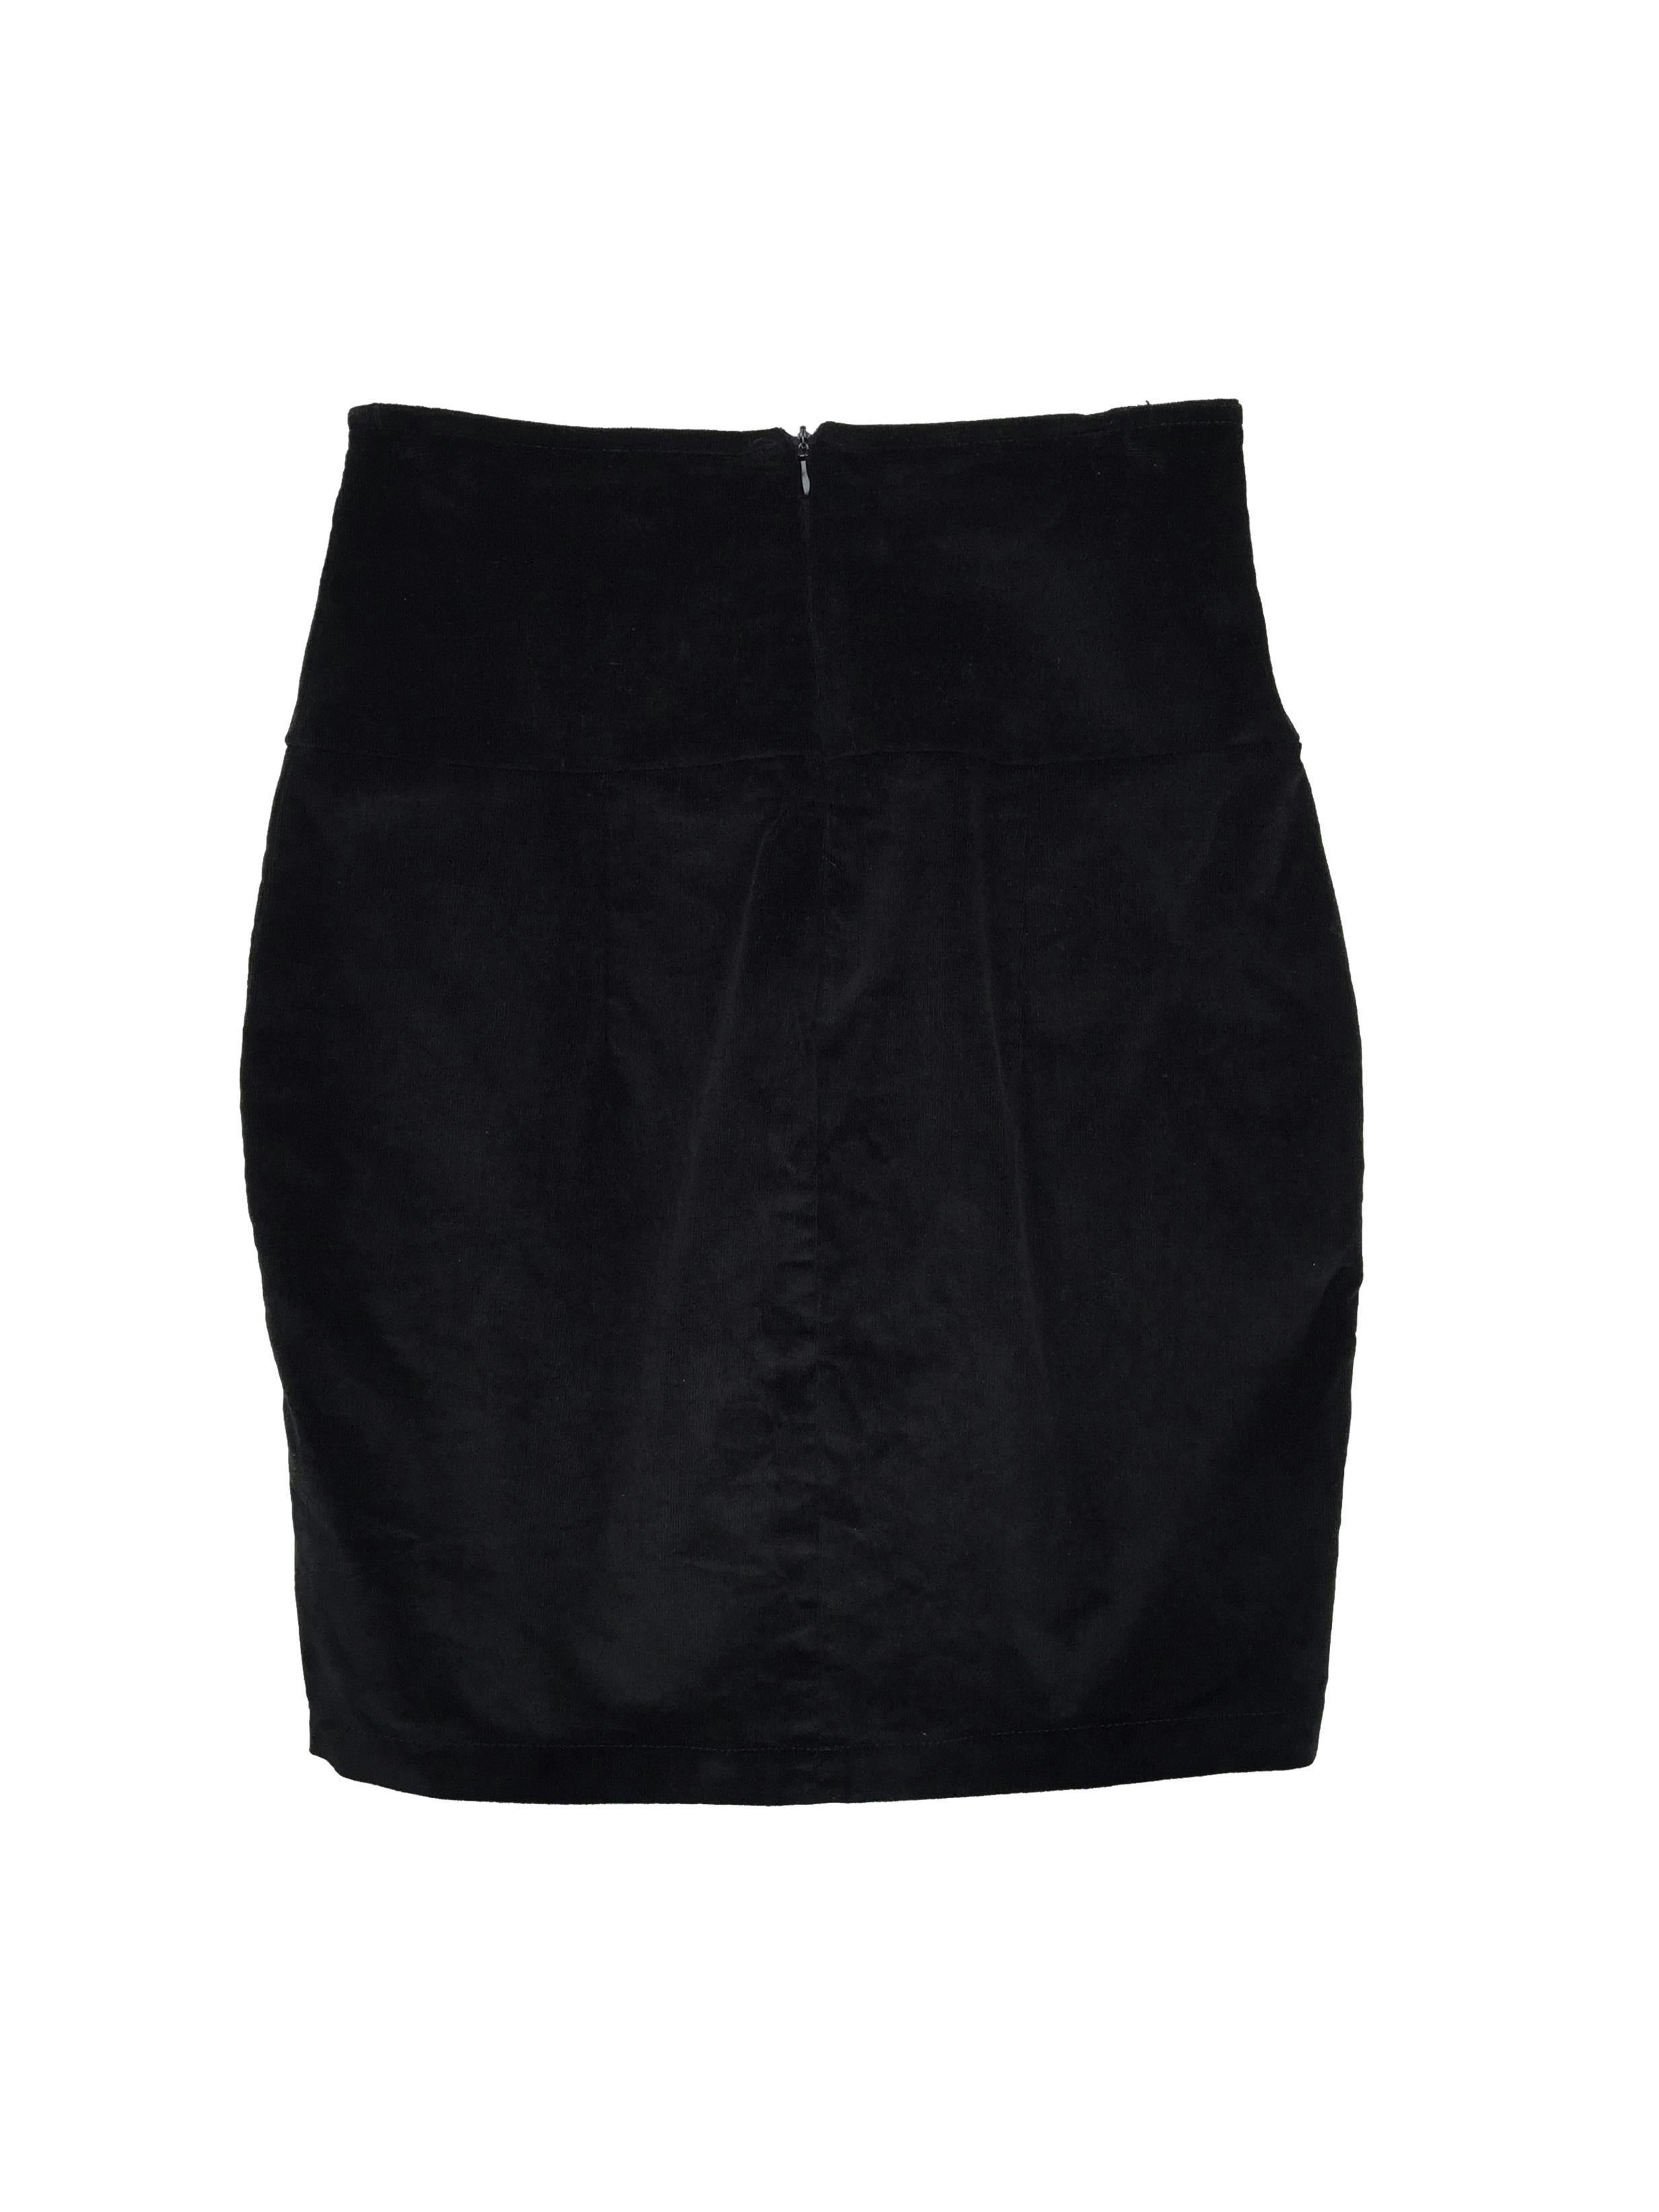 Falda negra de corduroy ligeramente stretch, pretina ancha y cierre posterior. Cintura 68cm Largo 50cm